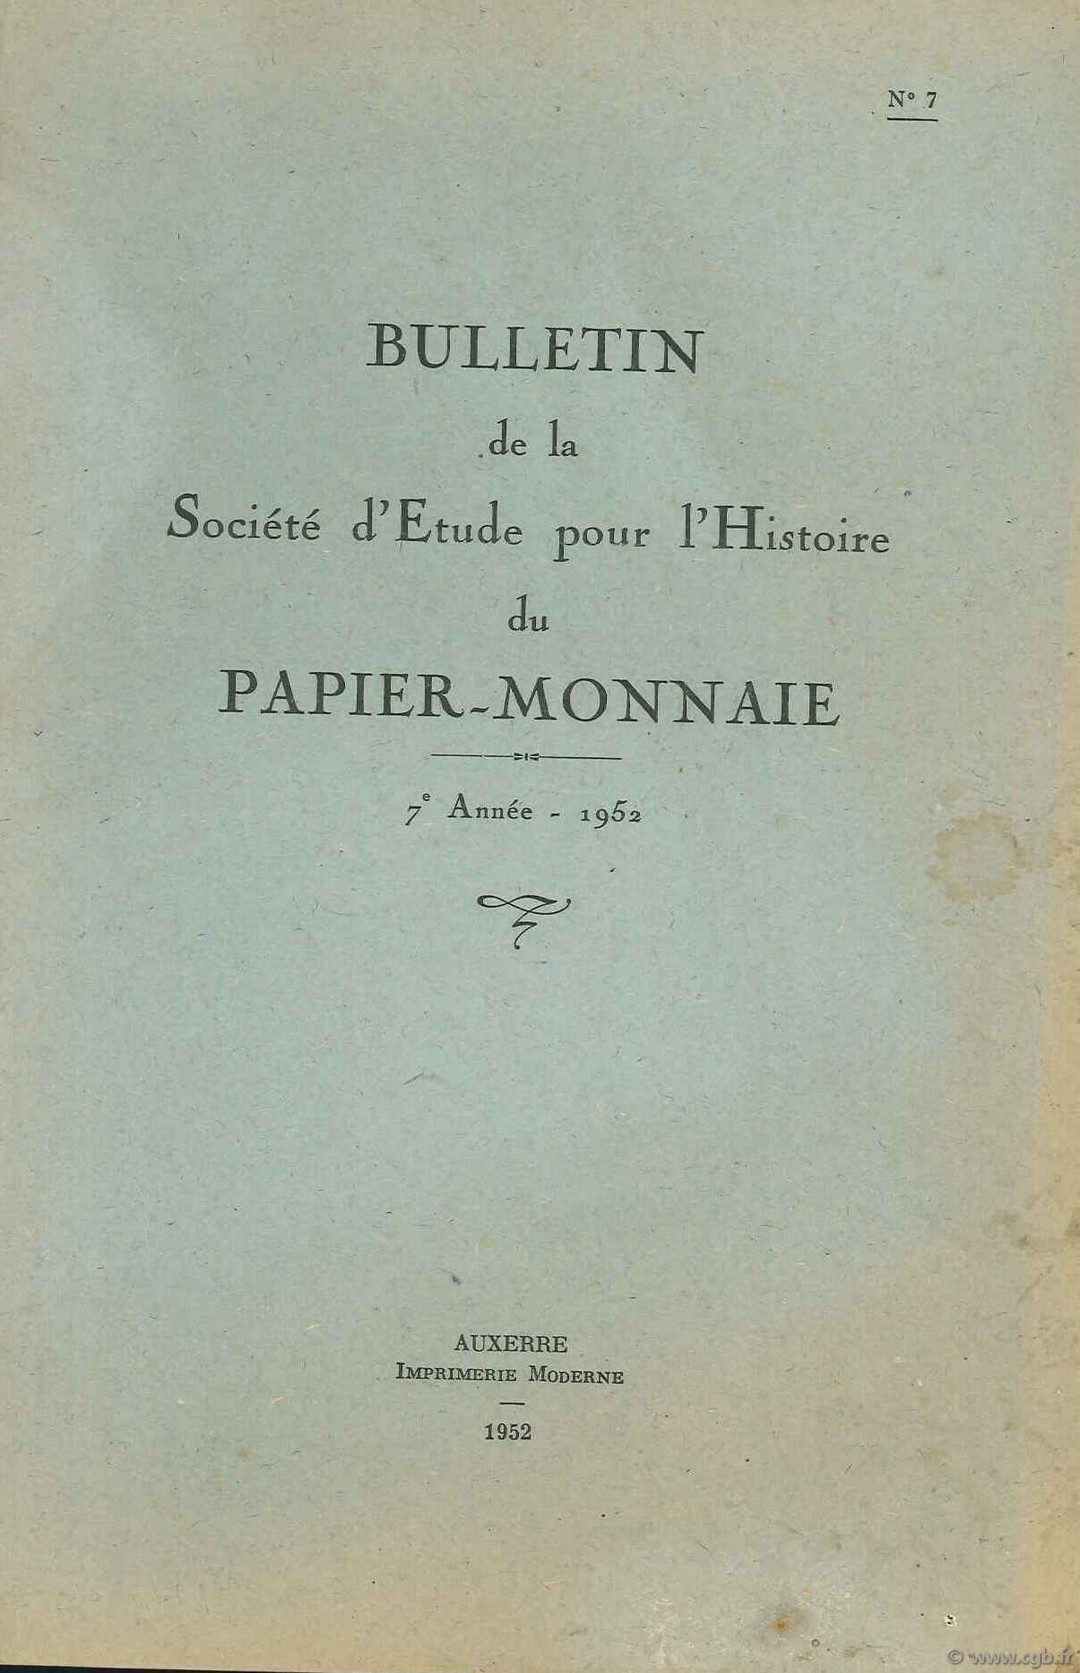 Bulletin de la Société d Etude pour l Histoire du Papier-Monnaie BLANCHET A., FORIEN J., GRISOT P., HABEREKON R.,   LAFAURIE J., TESSIER G.